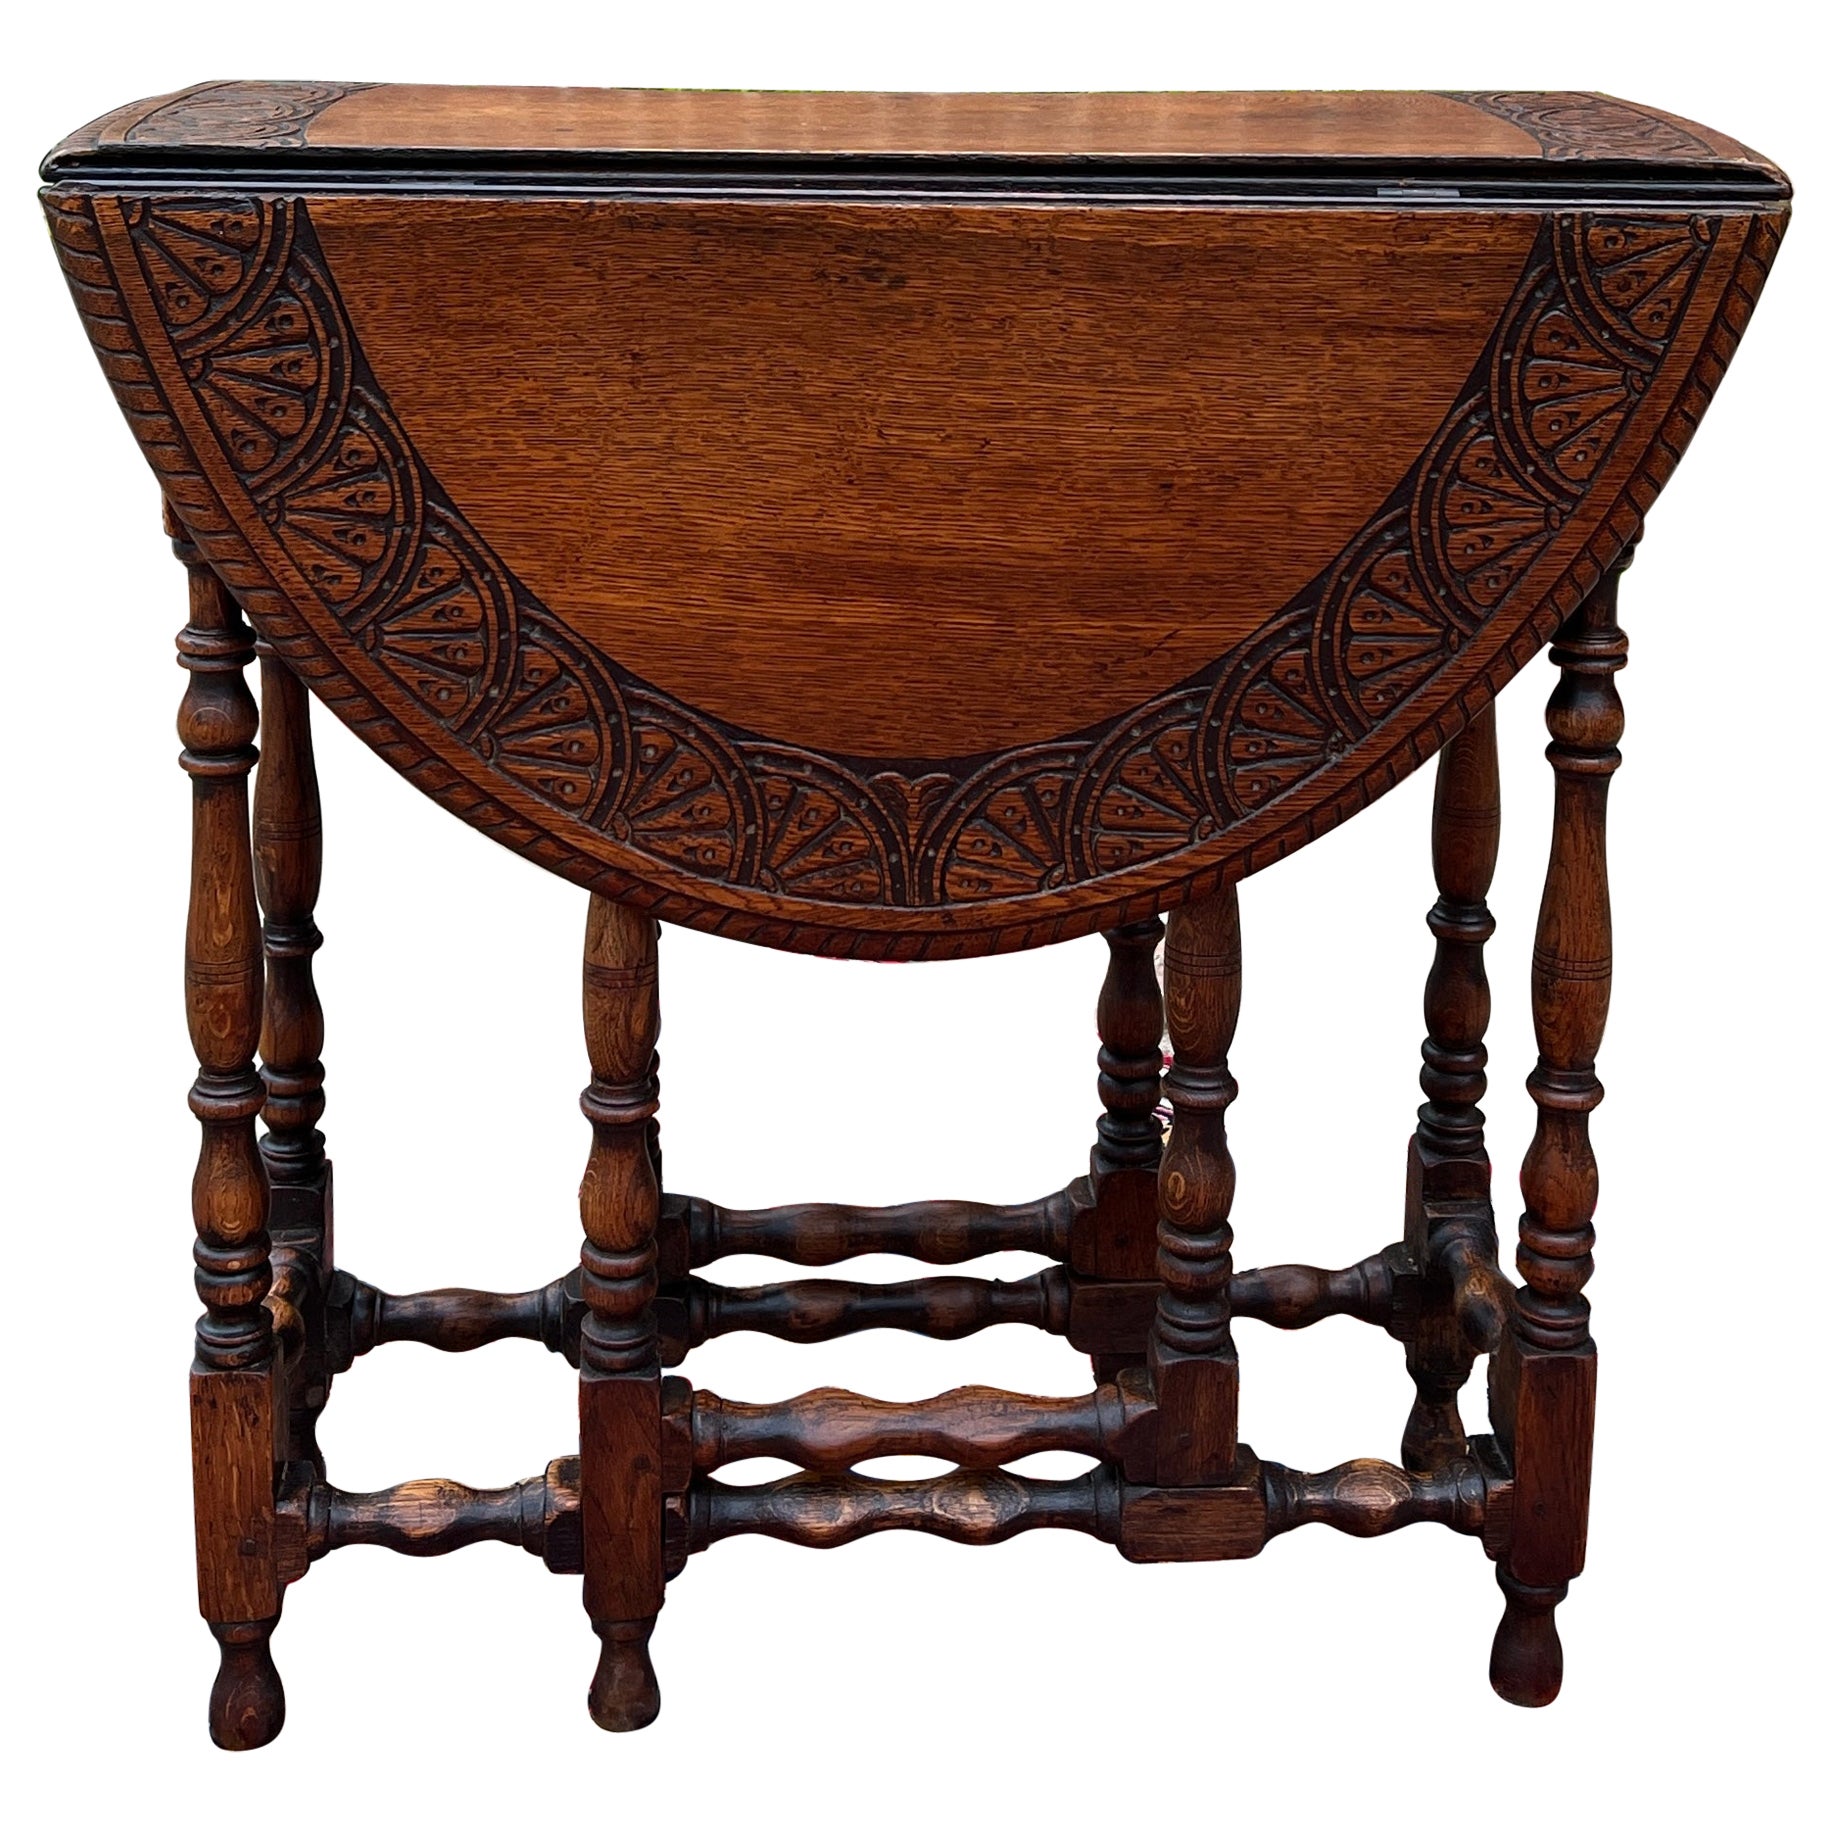 Antique English Table Drop Leaf Gateleg Turned Post Carved Top Oak Oval For Sale